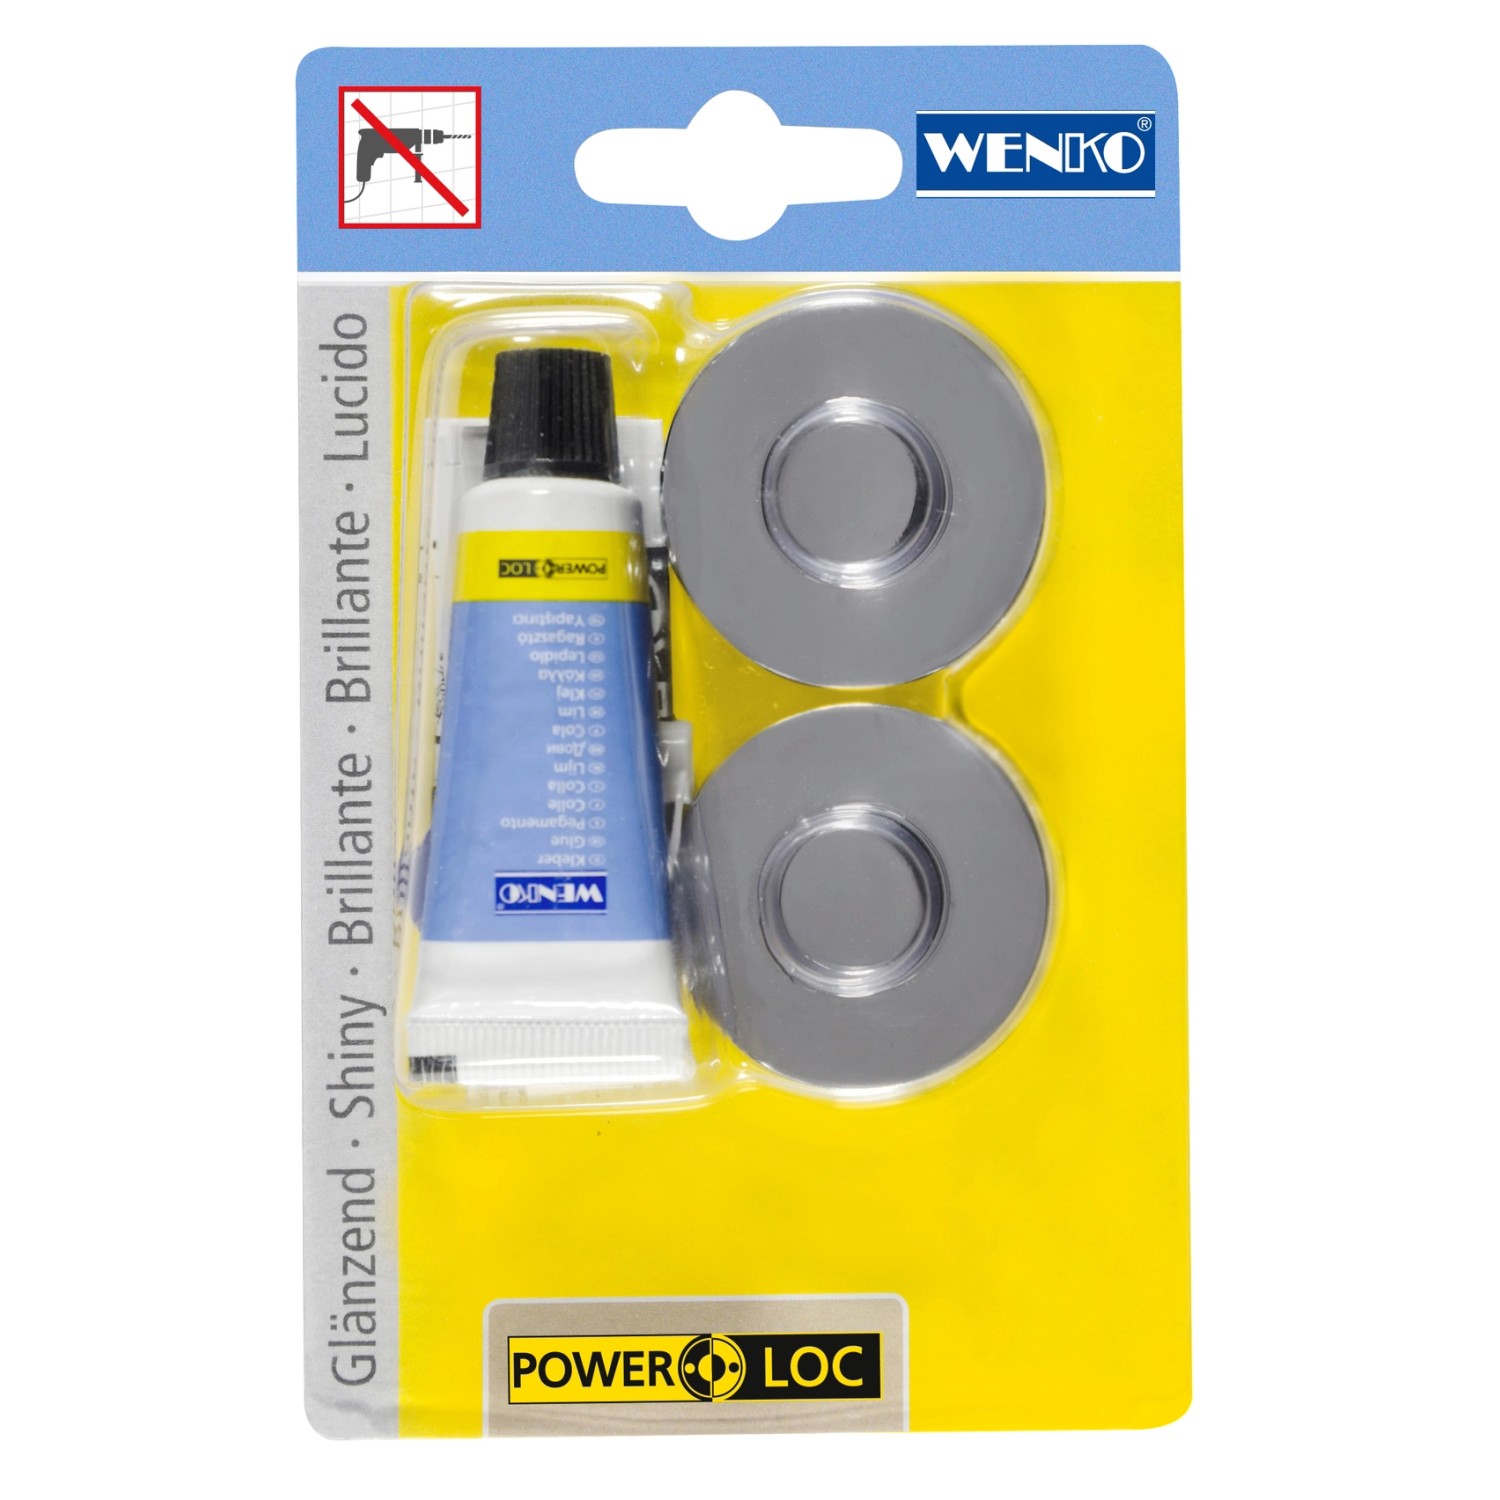 Wenko Power-Loc Wandhaken Adapter Premium/Classic